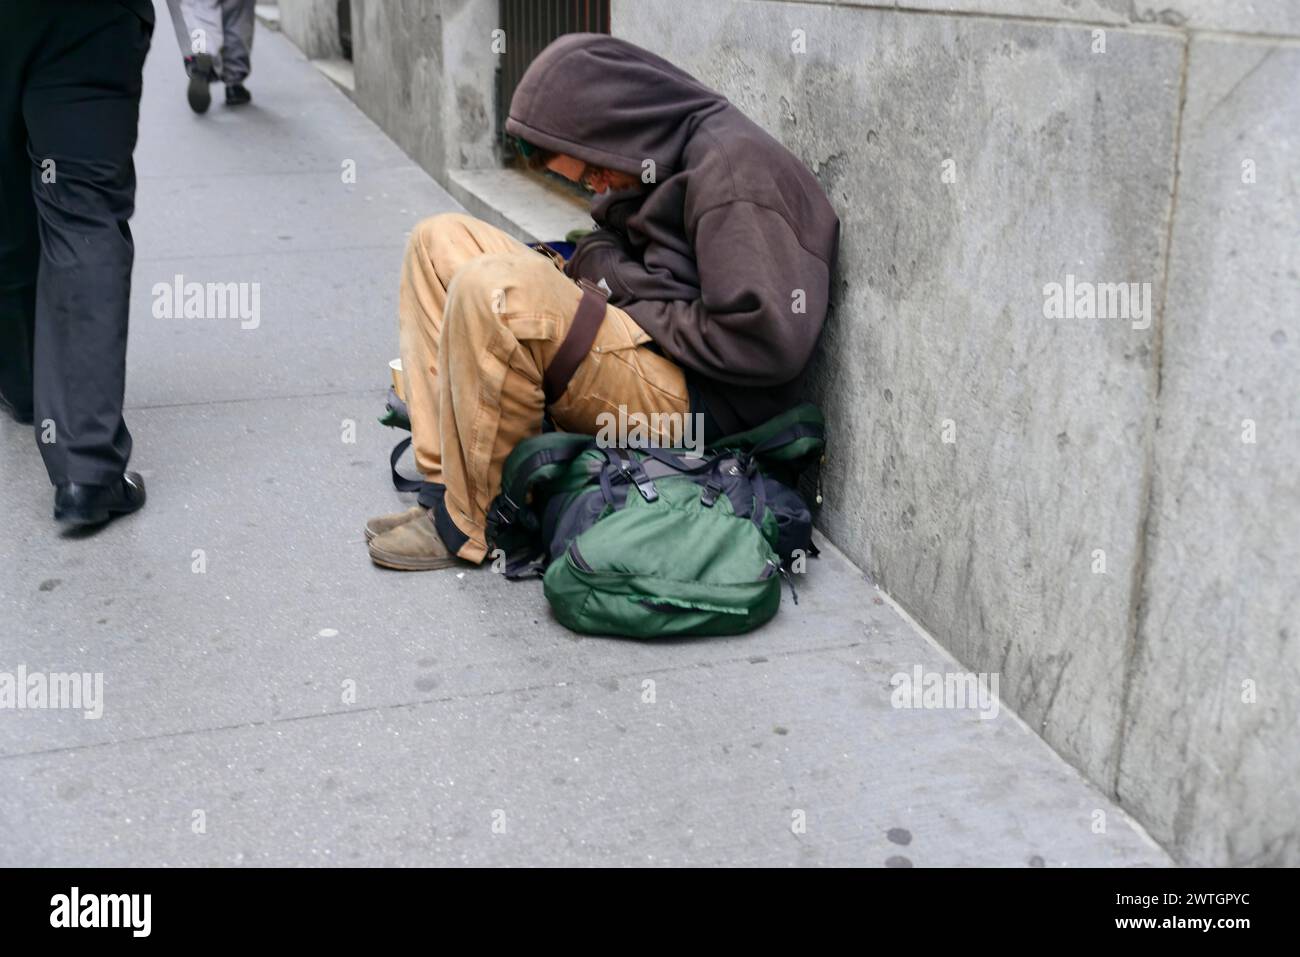 Ein Obdachloser schläft auf einem Bürgersteig mit einem grünen Rucksack neben ihm, Manhattan, New York City, New York, USA, Nordamerika Stockfoto